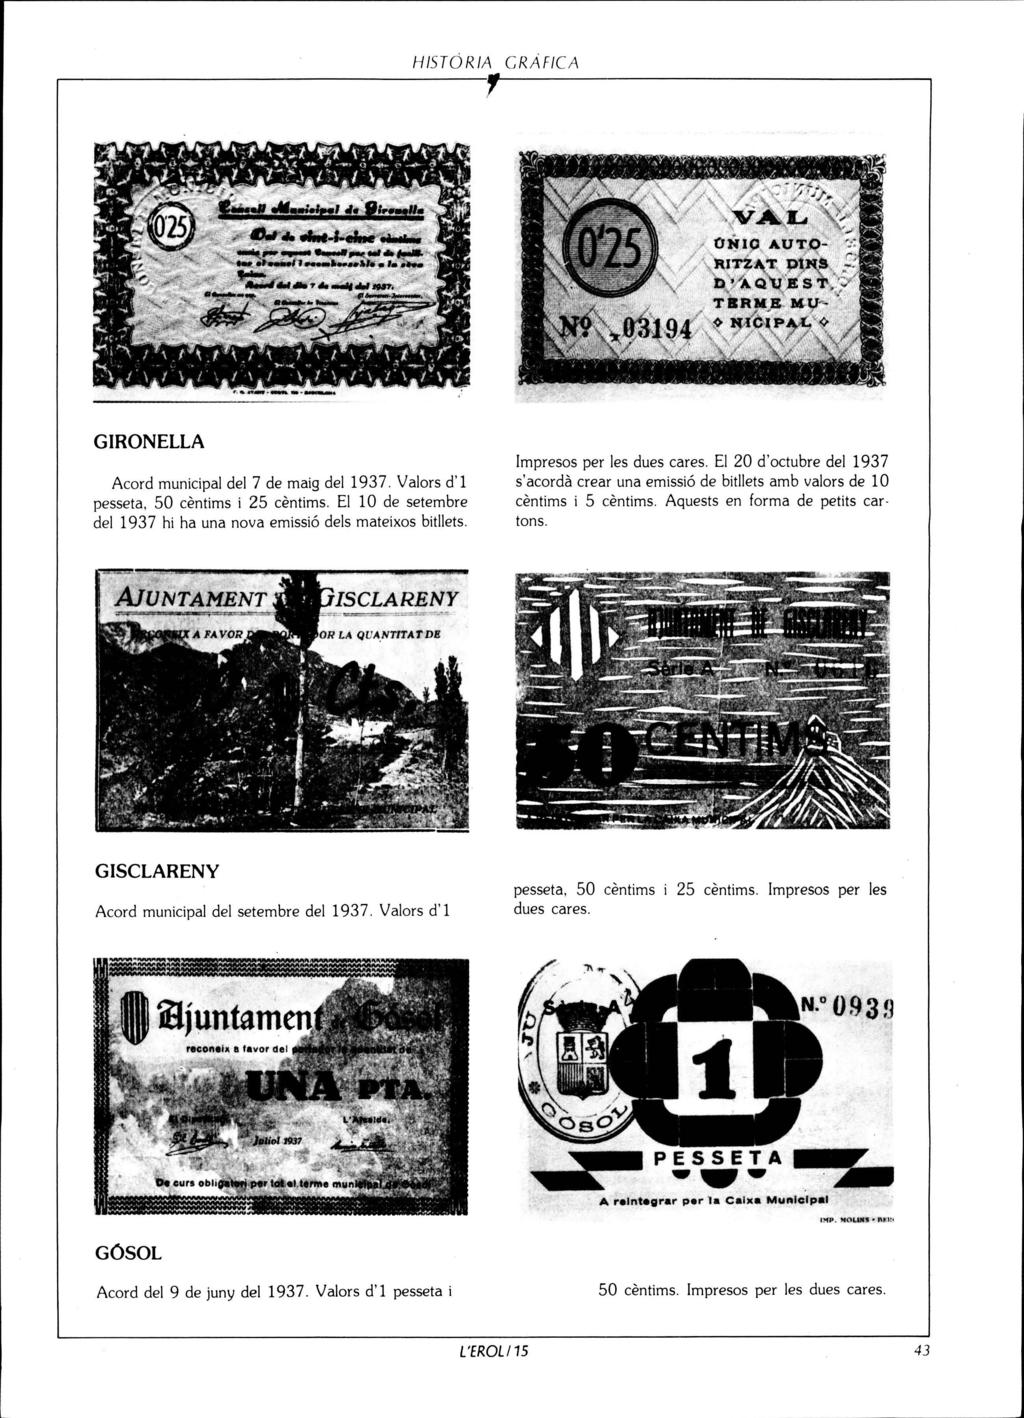 HISTORIA CRAFICA GIRONELLA Acord municipal del 7 de maig del 1937. Valors d'l pesseta, 50 centims i 25 centims. El 10 de setembre del 1937 hi ha una nova emissió deis mateixos bitllets.